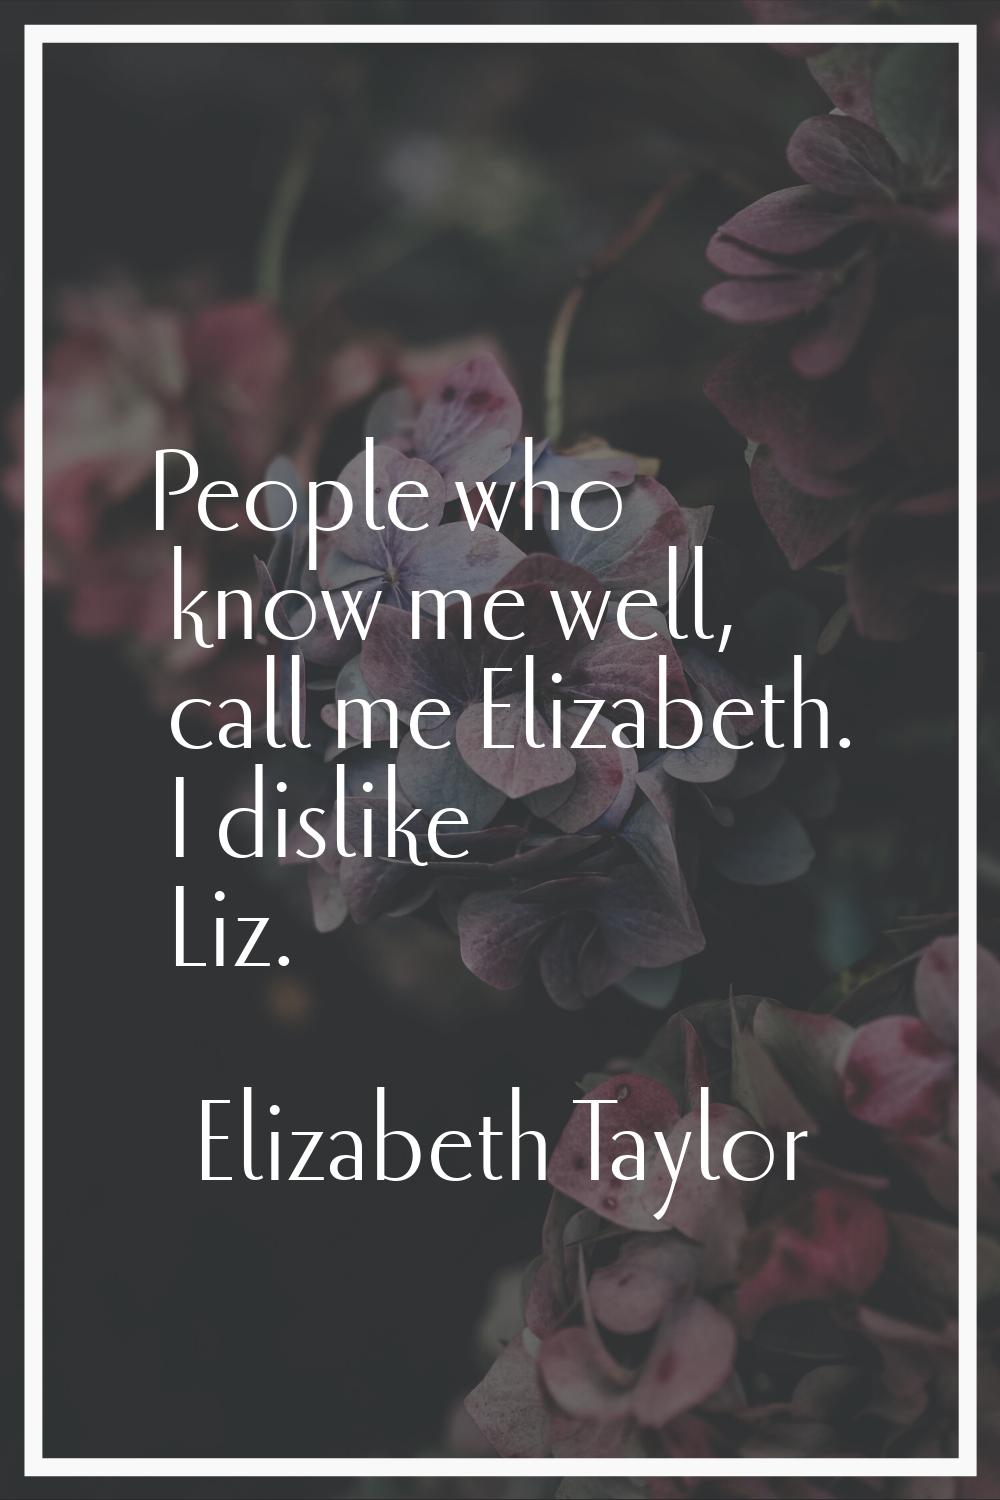 People who know me well, call me Elizabeth. I dislike Liz.